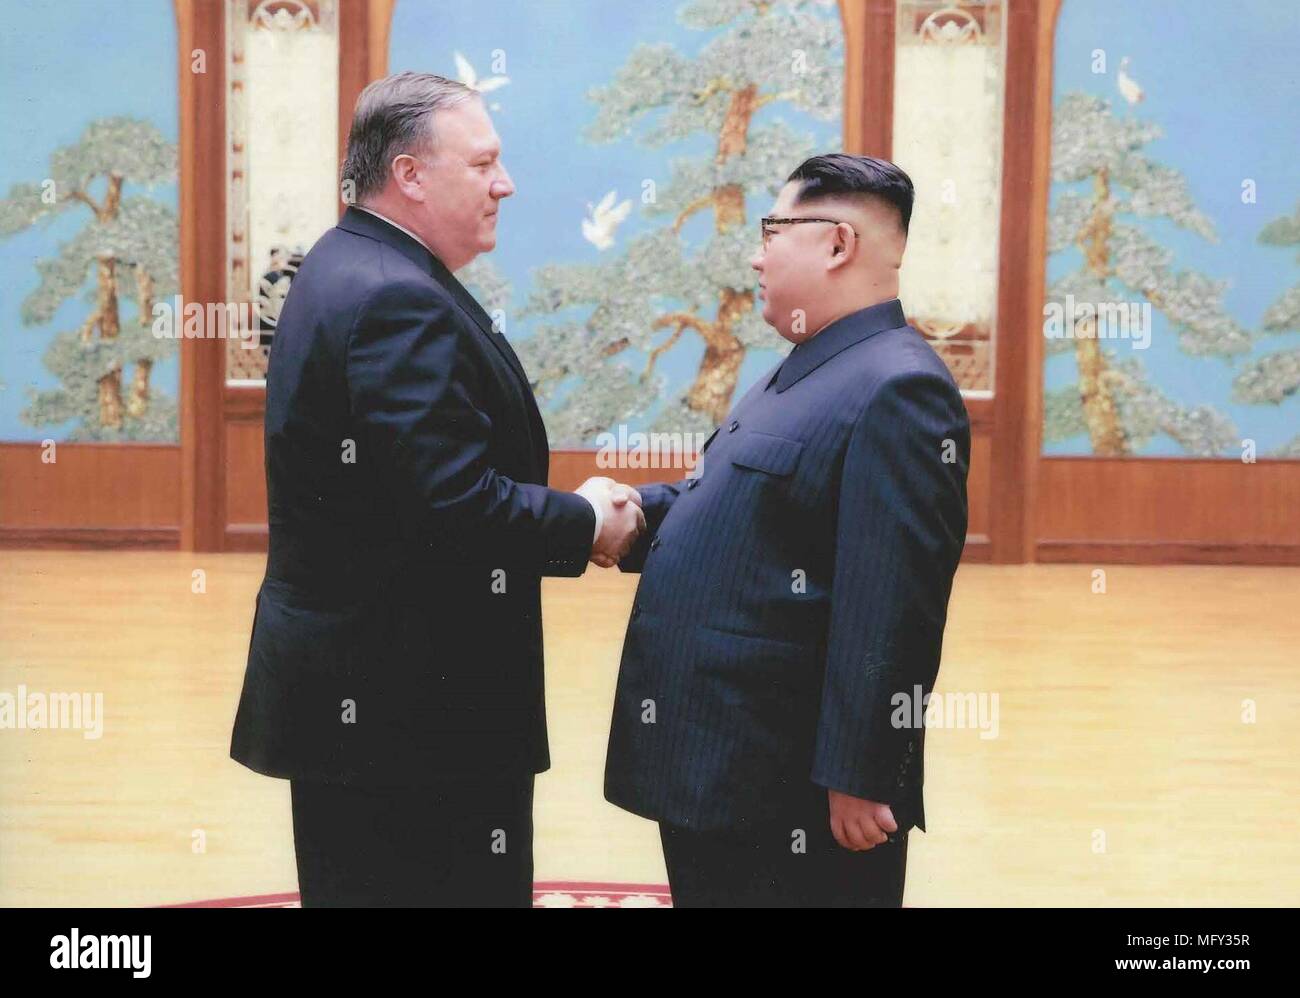 Das Weiße Haus veröffentlichte Bilder April 27, 2018, CIA-Direktor Mike Pompeo, Links, Hände schütteln mit dem nordkoreanischen Führer Kim Jong Un bei einem Geheimtreffen über Ostern im April 2018 in Pjöngjang Nordkorea. Pompeo war der Oberste US-Offiziellen einen nordkoreanischen Führer zu Treffen seit 2000. Stockfoto